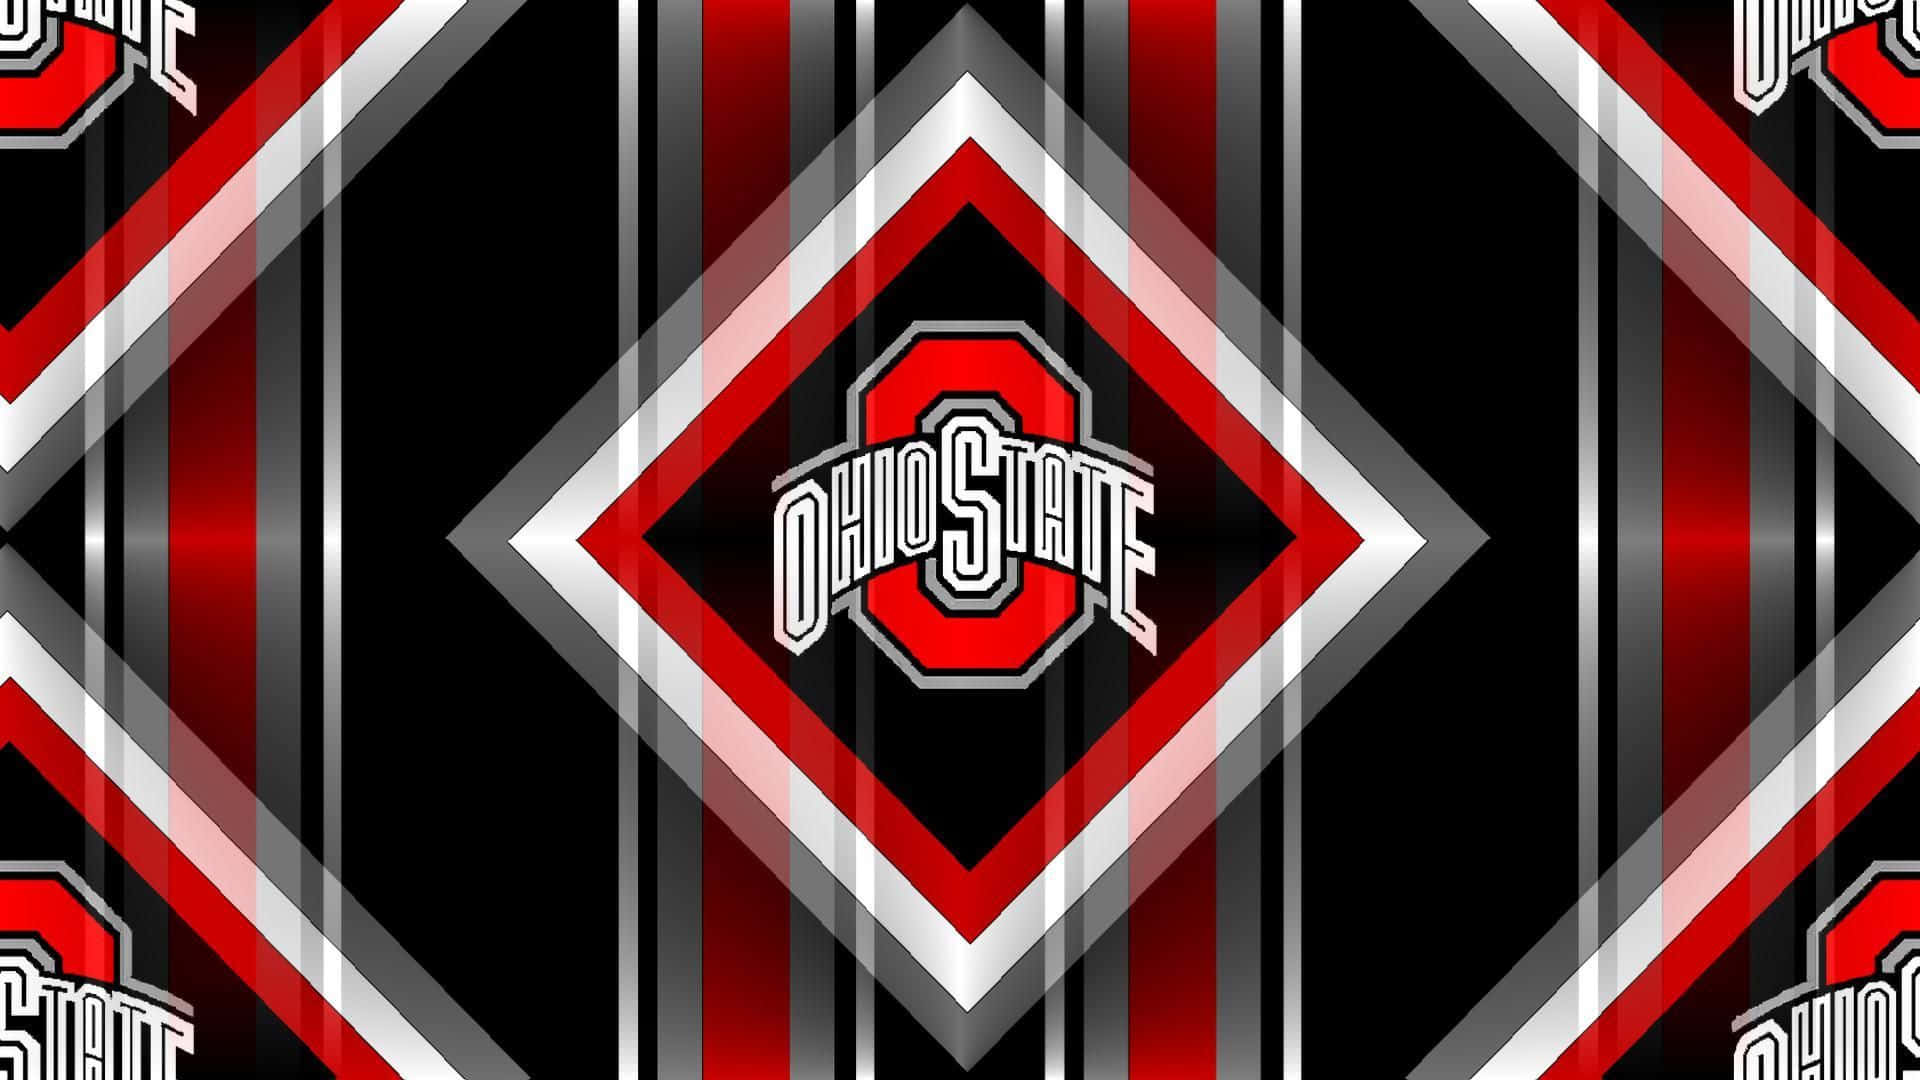 Logotipode Ohio State Envolvido Em Um Diamante. Papel de Parede